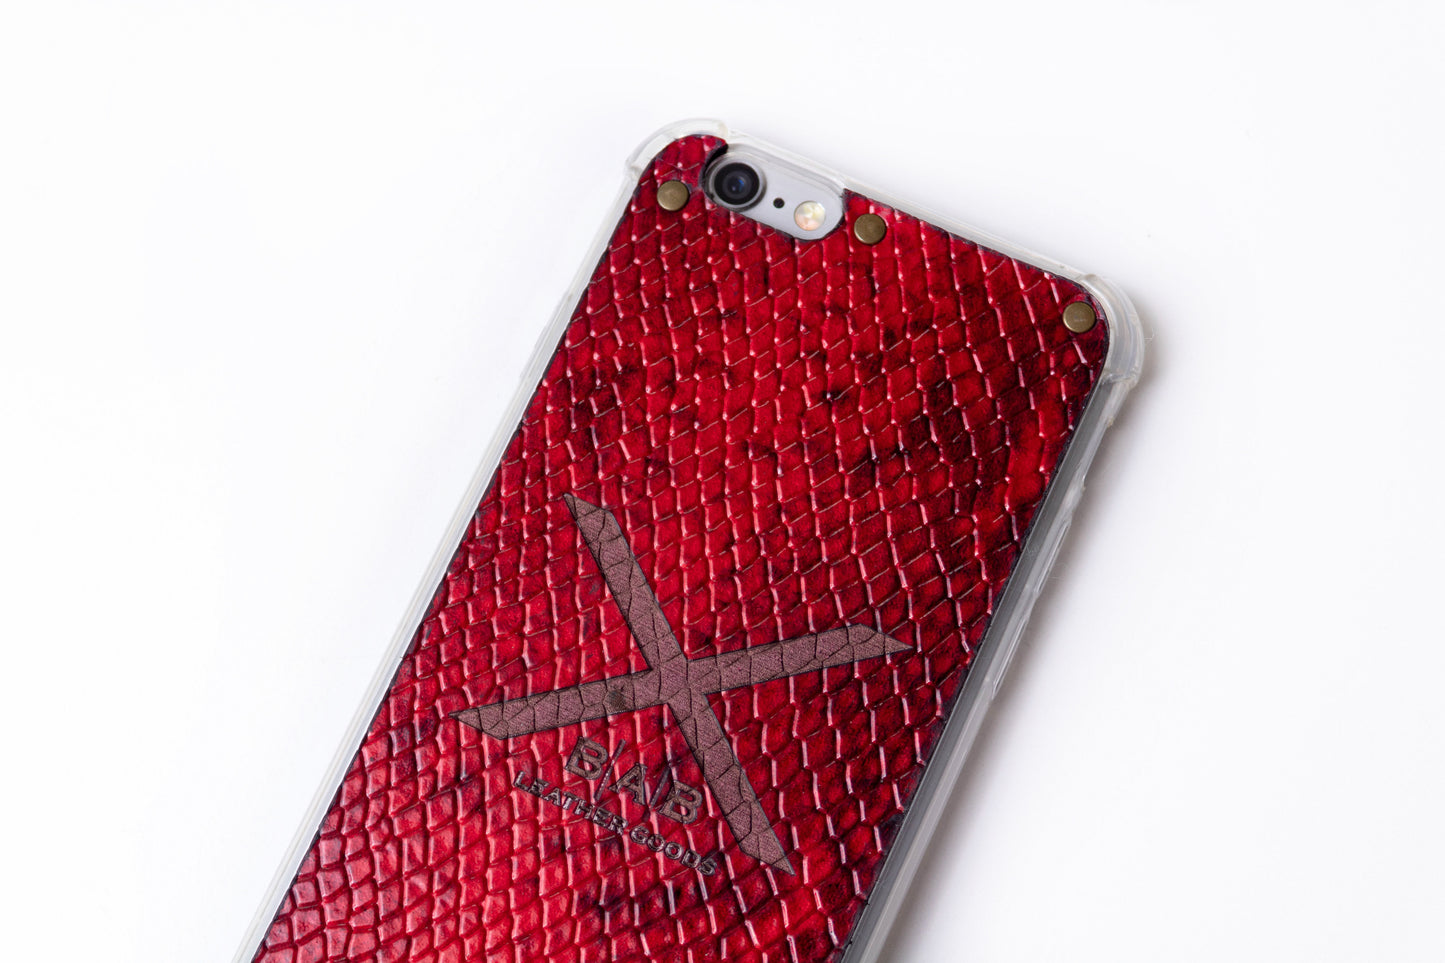 Capa para iPhone de Couro Genuíno Python Vermelho Texturizado cortado e gravado a laser, 5 Rebites de Bronze.- F36